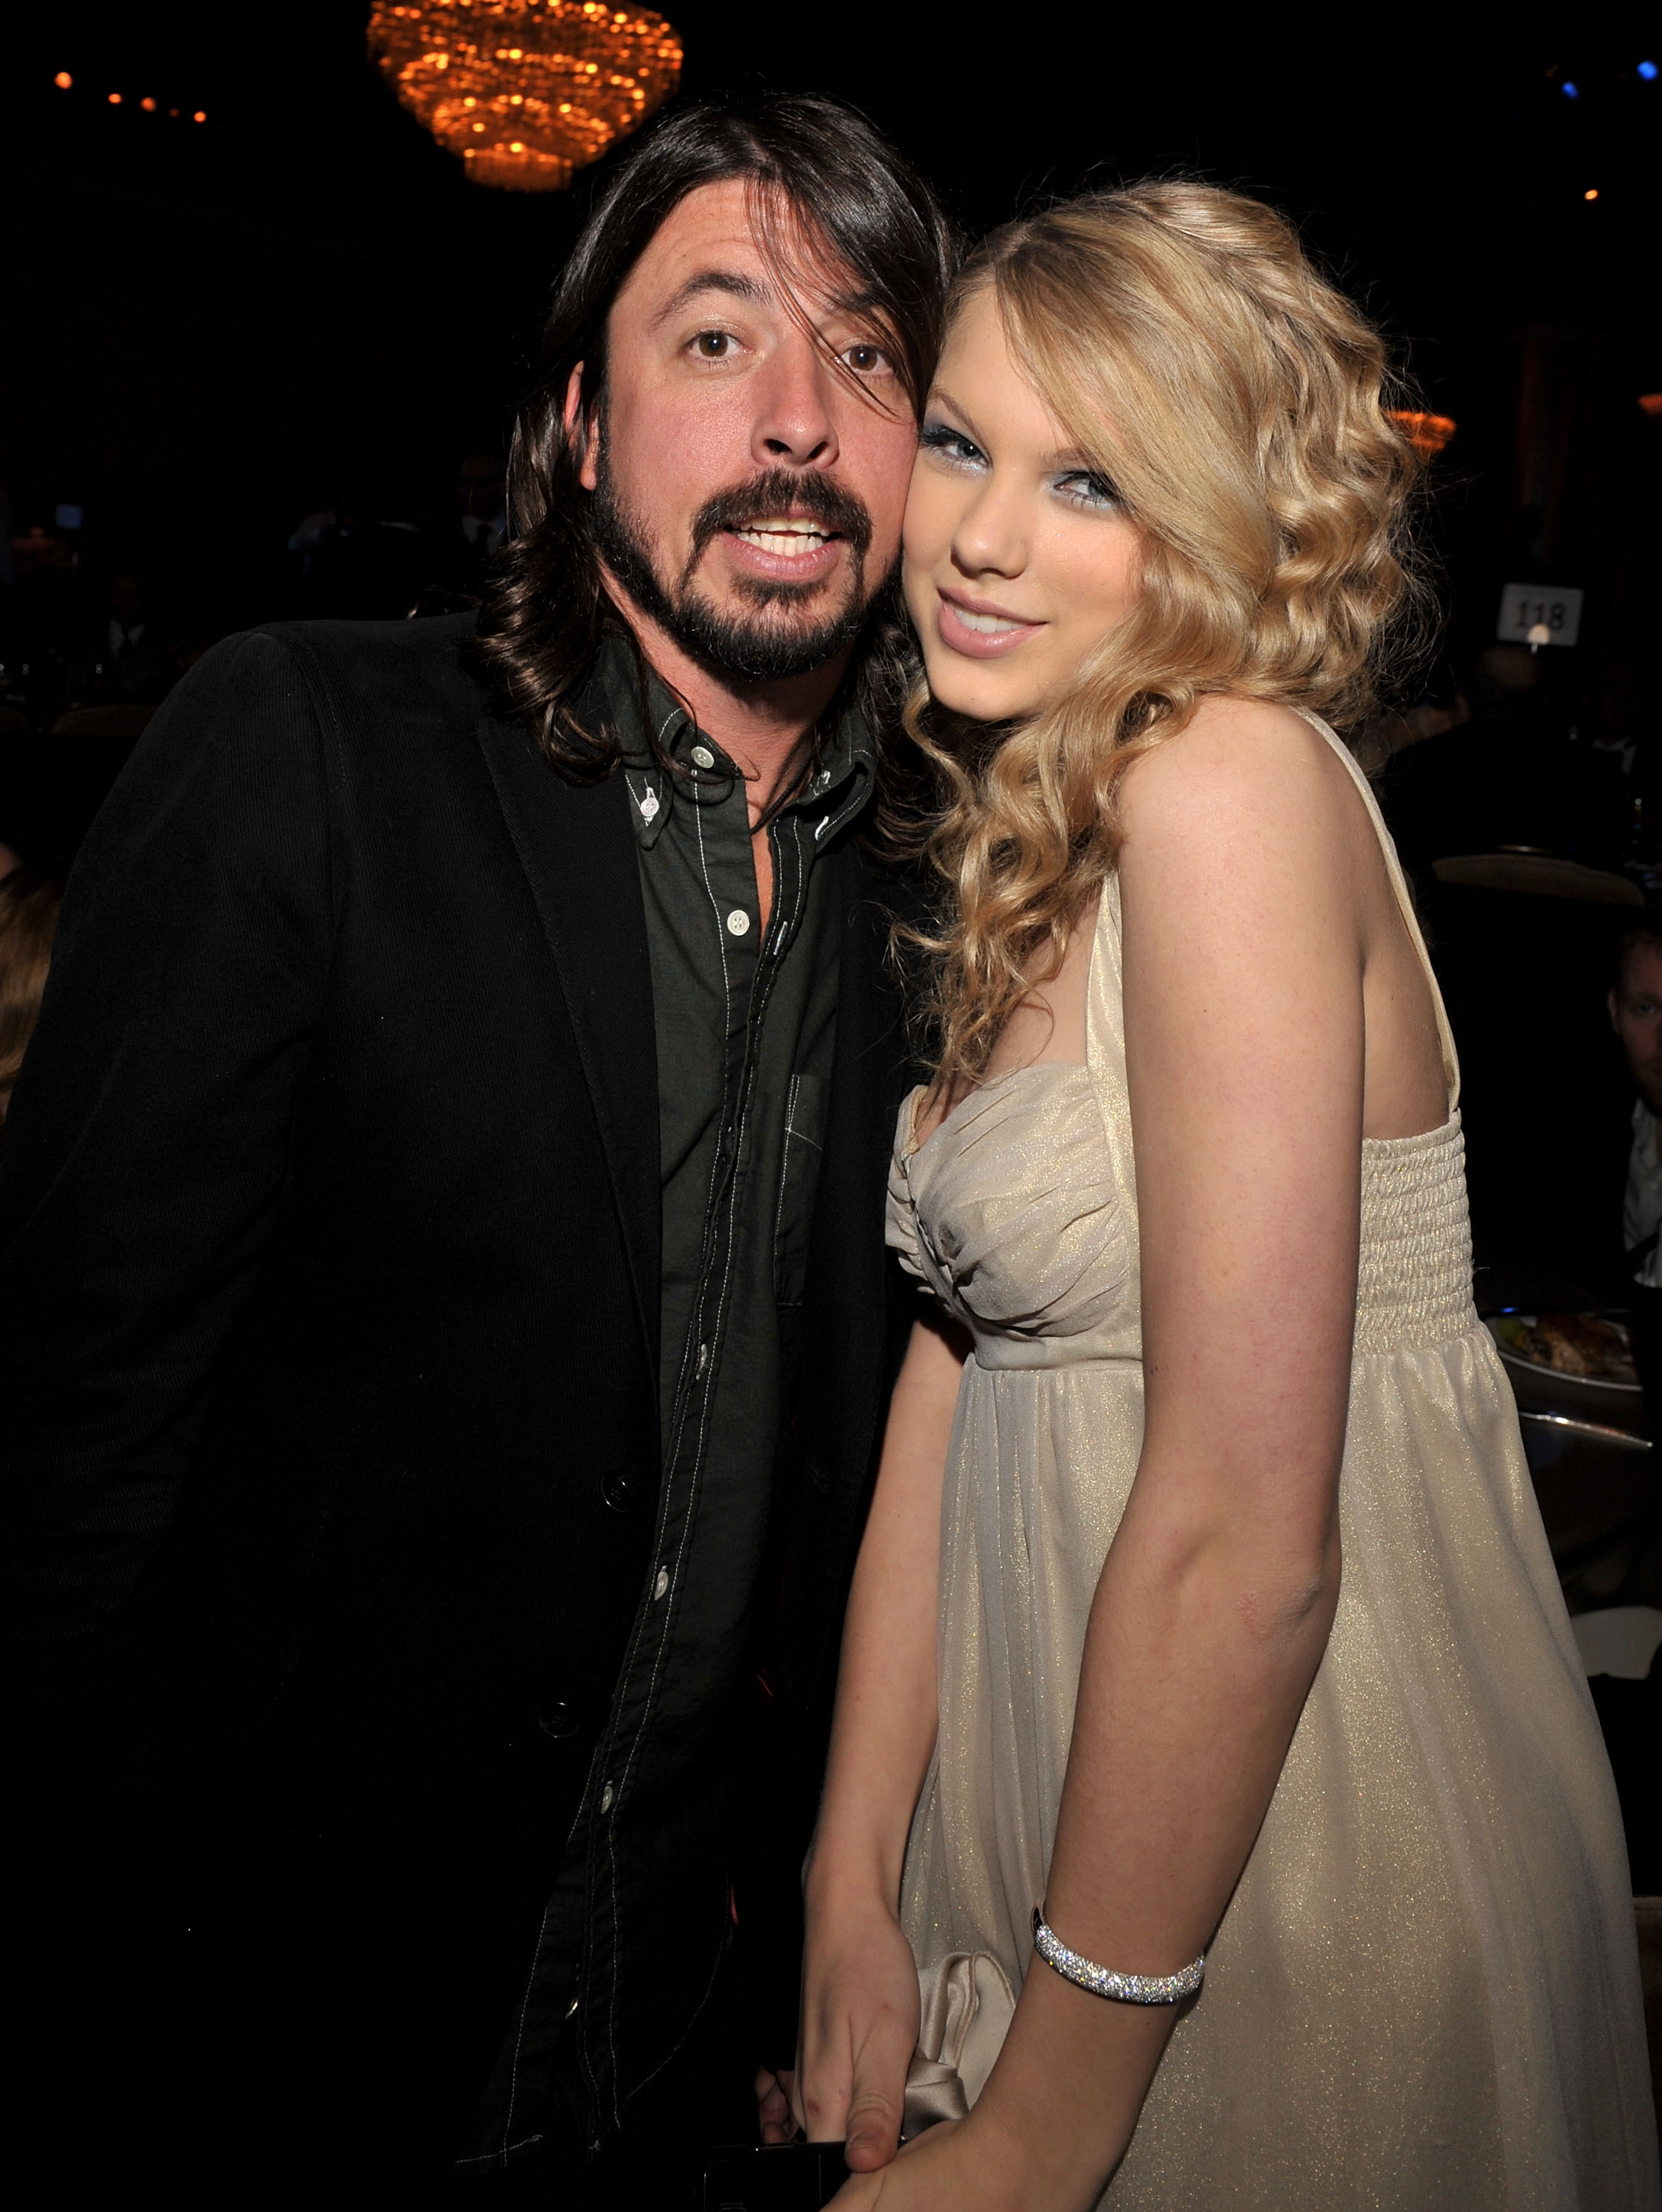 David Grohl und Taylor Swift auf der Clive Davis Pre-Grammy Party in Los Angeles, Kalifornien am 9. Februar 2008 | Quelle: Getty Images